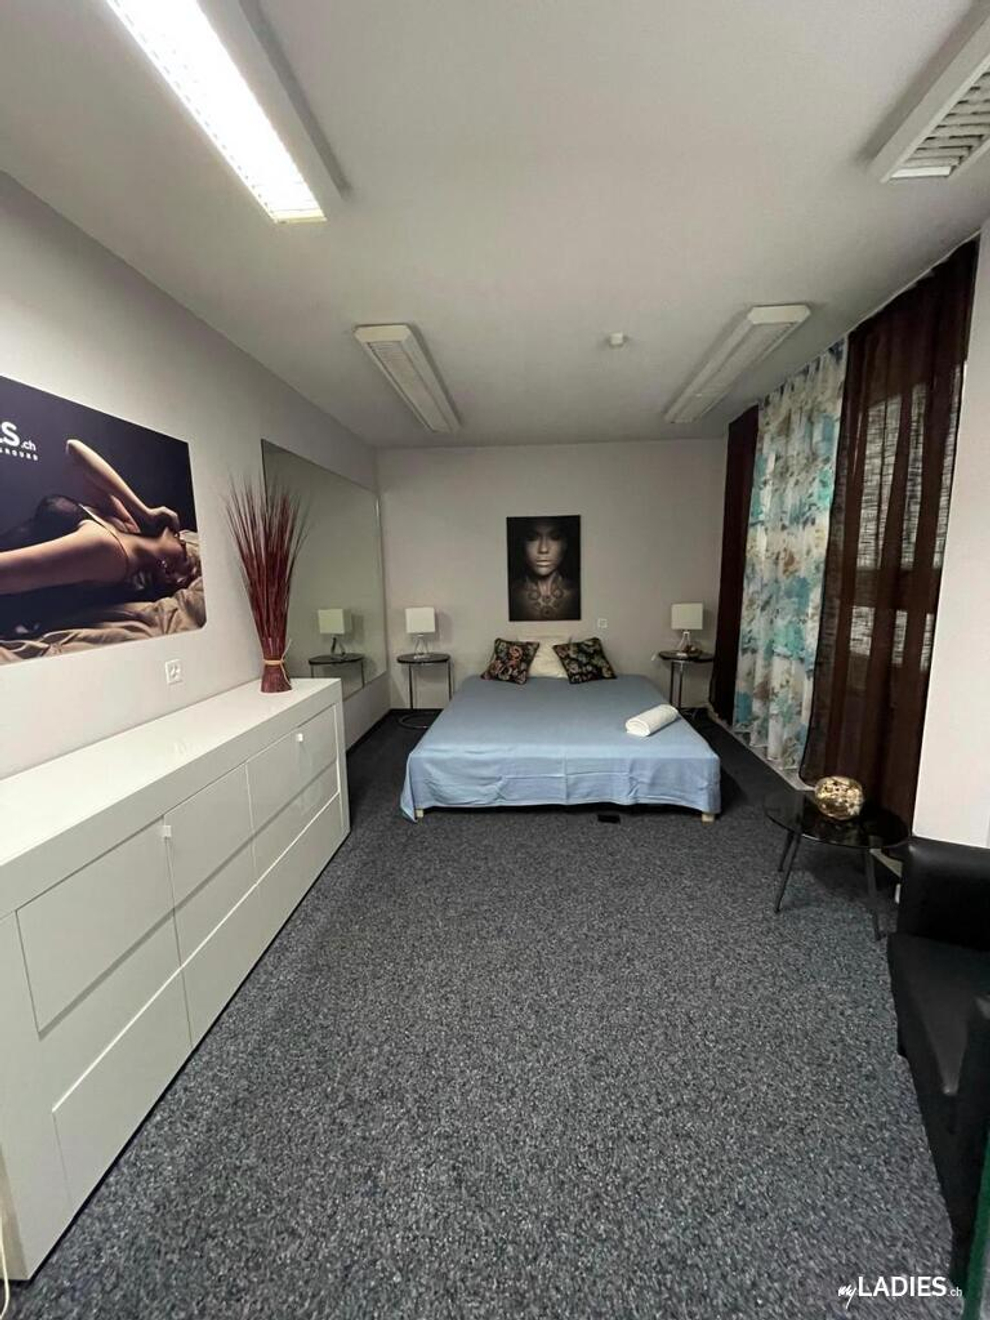 Zimmer / Rooms / Habitaciones in Baden Aargau / Bild 1